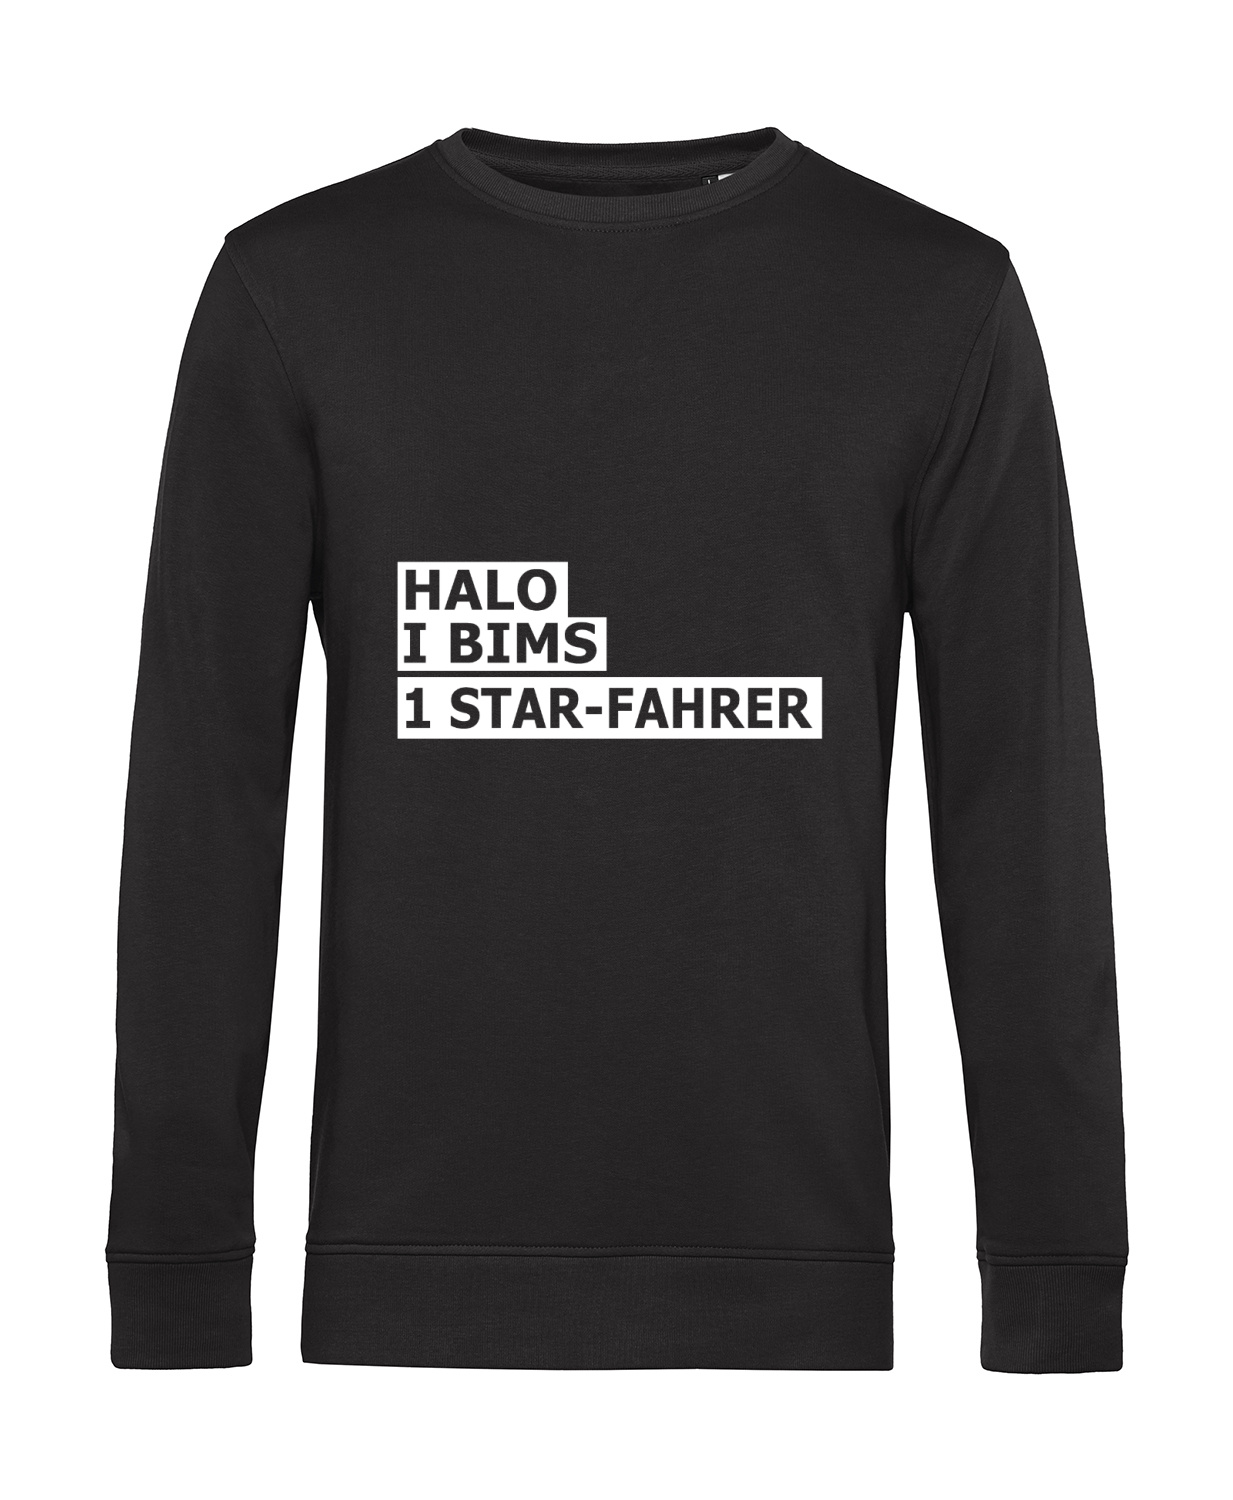 Nachhaltiges Sweatshirt Herren 2Takter - Halo I bims 1 Star-Fahrer